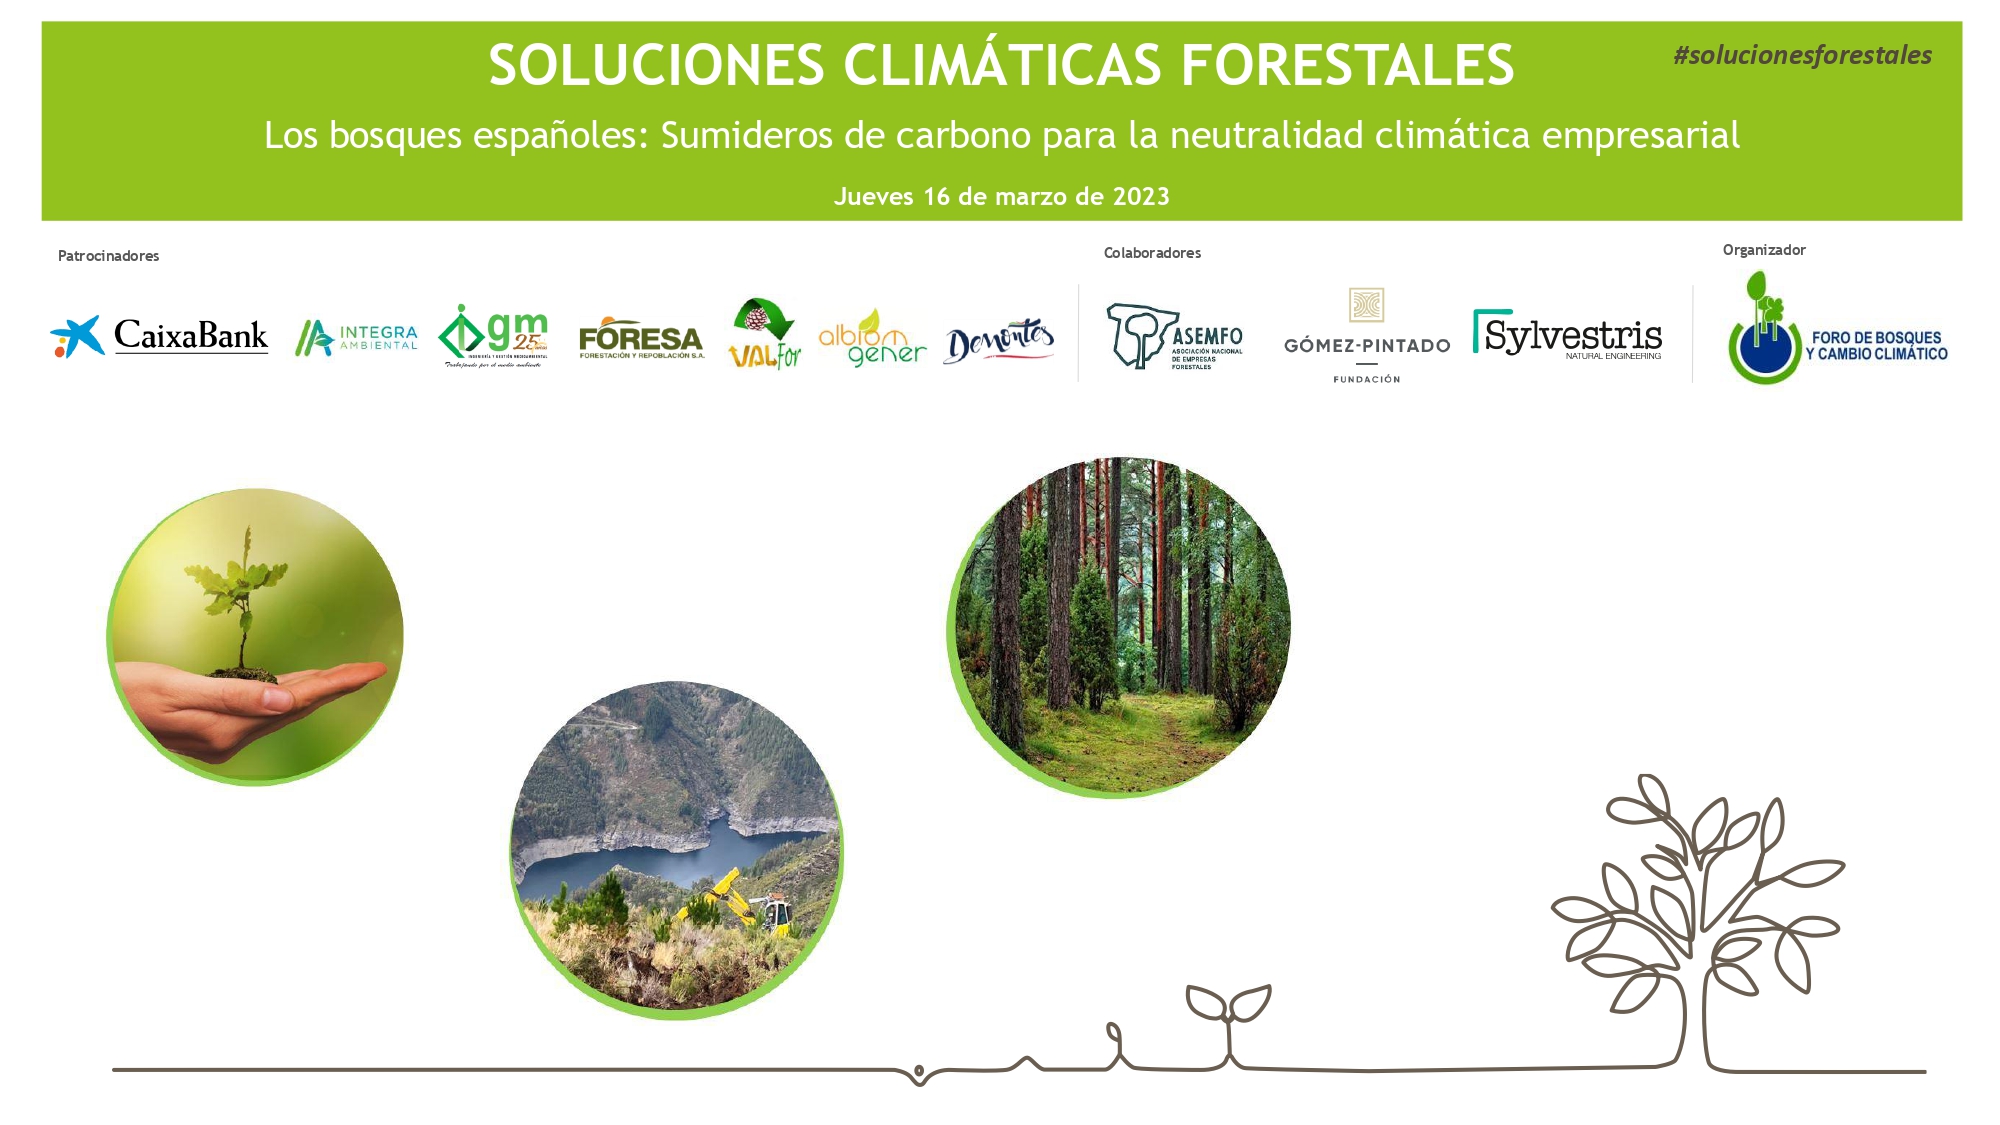 Los bosques españoles: Clave en la lucha contra el cambio climático y en la neutralidad climática empresarial